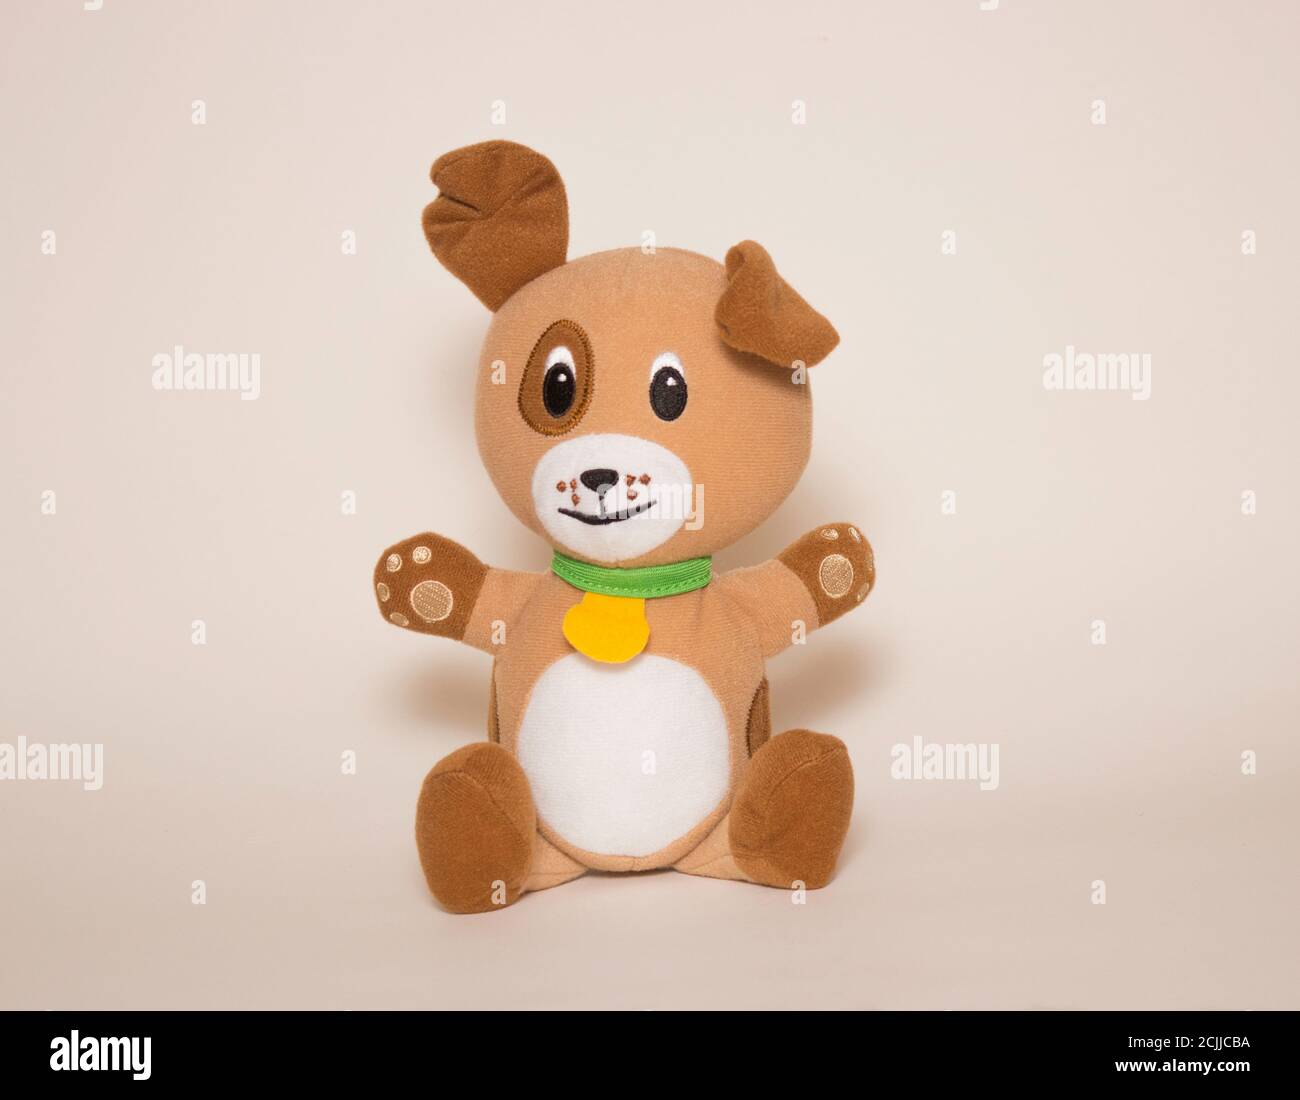 Un perro marrón de juguete se sienta sobre un fondo blanco. Juguetes para niños, animales de peluche suave. Foto de stock